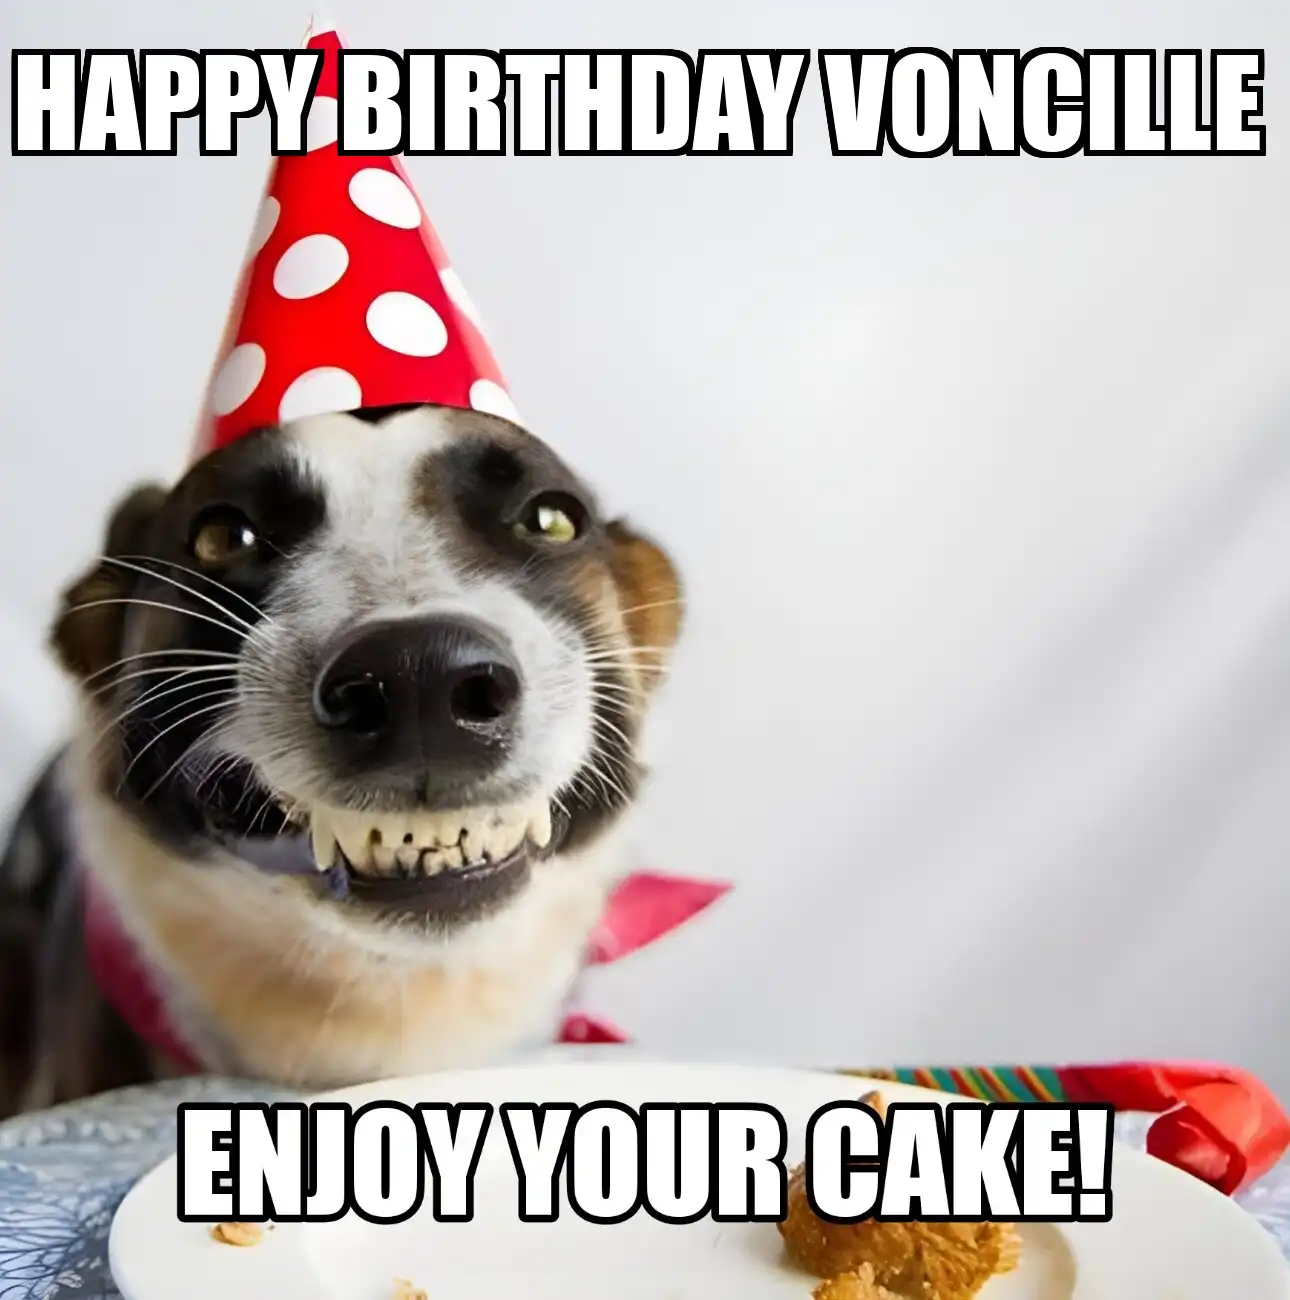 Happy Birthday Voncille Enjoy Your Cake Dog Meme